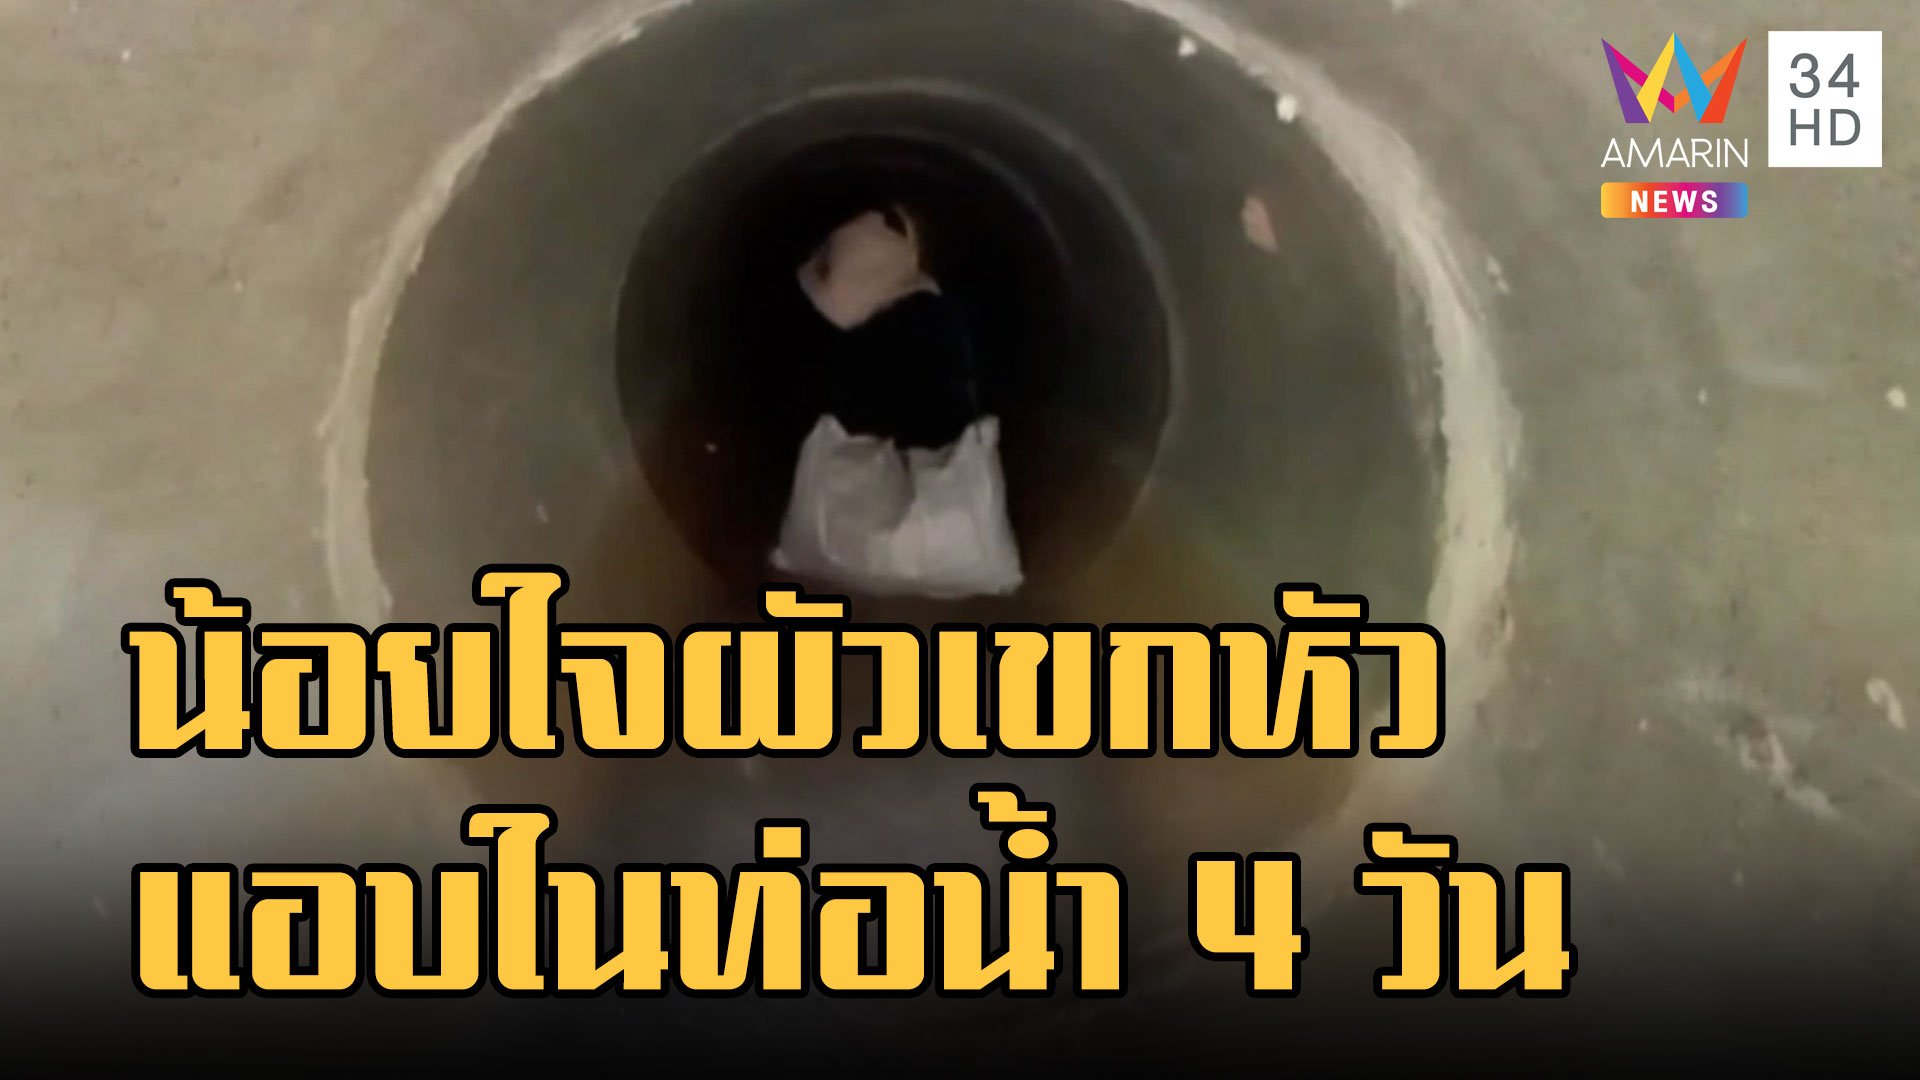 สาวน้อยใจผัวเขกหัว หนีซุกอยู่ในท่อระบายน้ำ 4 วัน | ข่าวอรุณอมรินทร์ | 13 พ.ย. 65 | AMARIN TVHD34